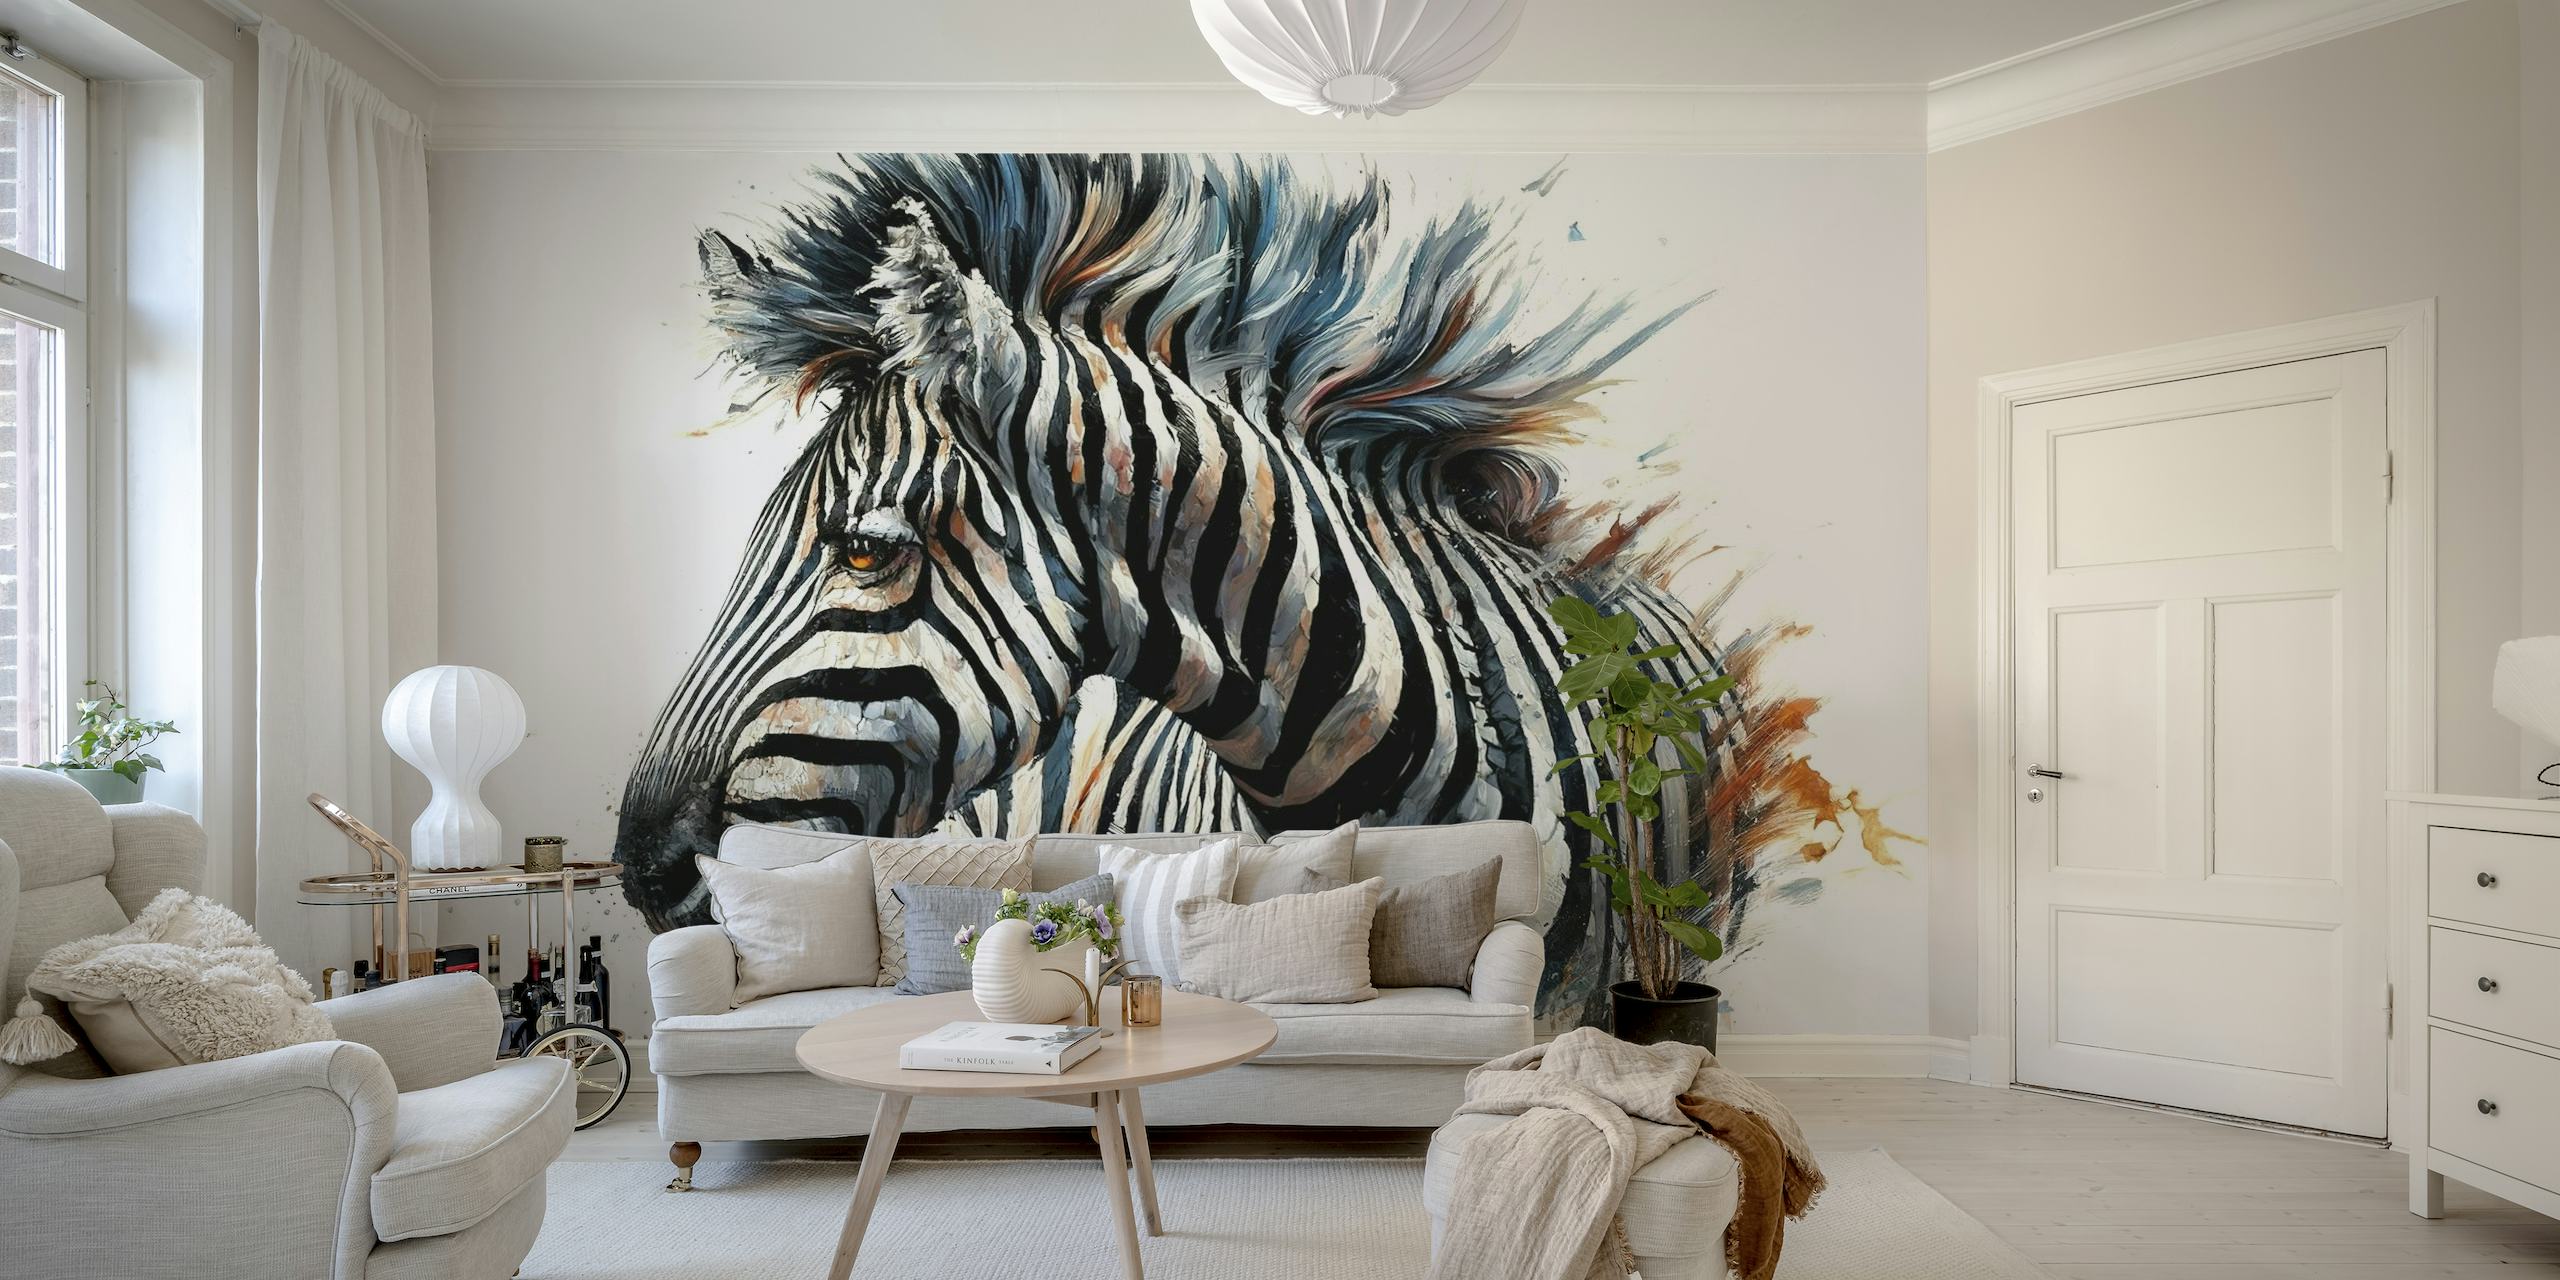 Ethereal Zebra in a Watercolor Dream carta da parati